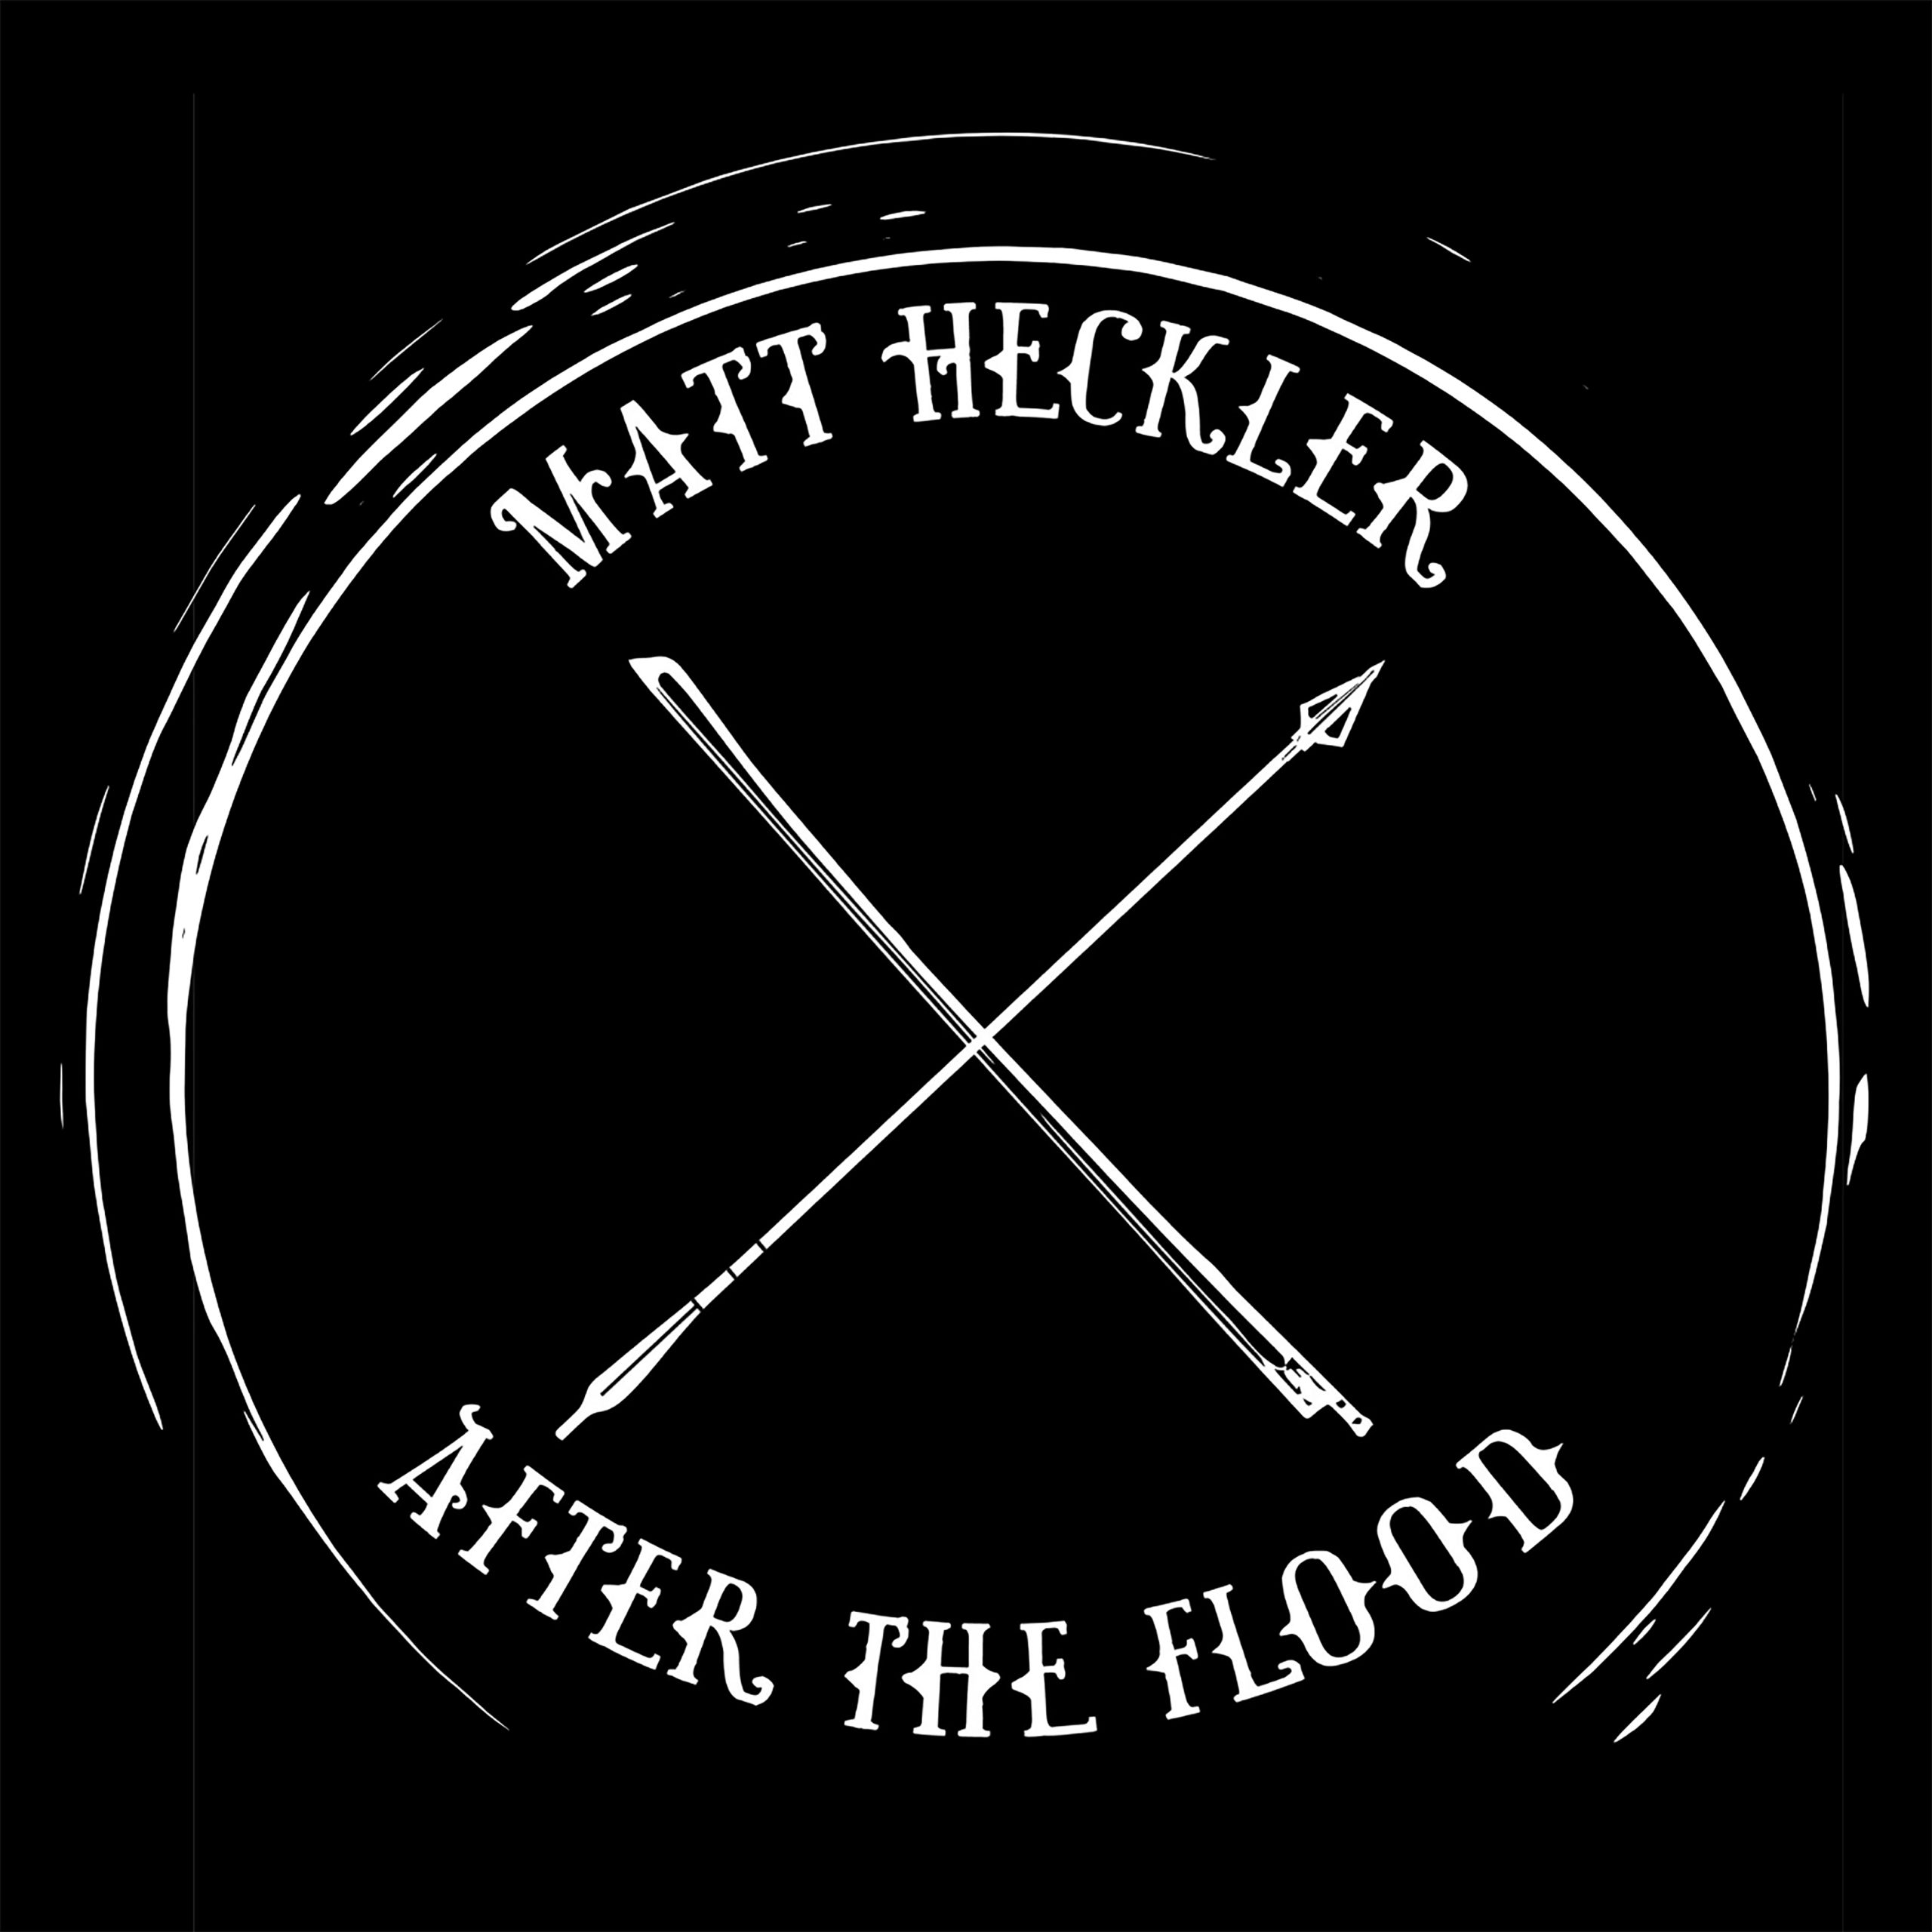 Matt Heckler